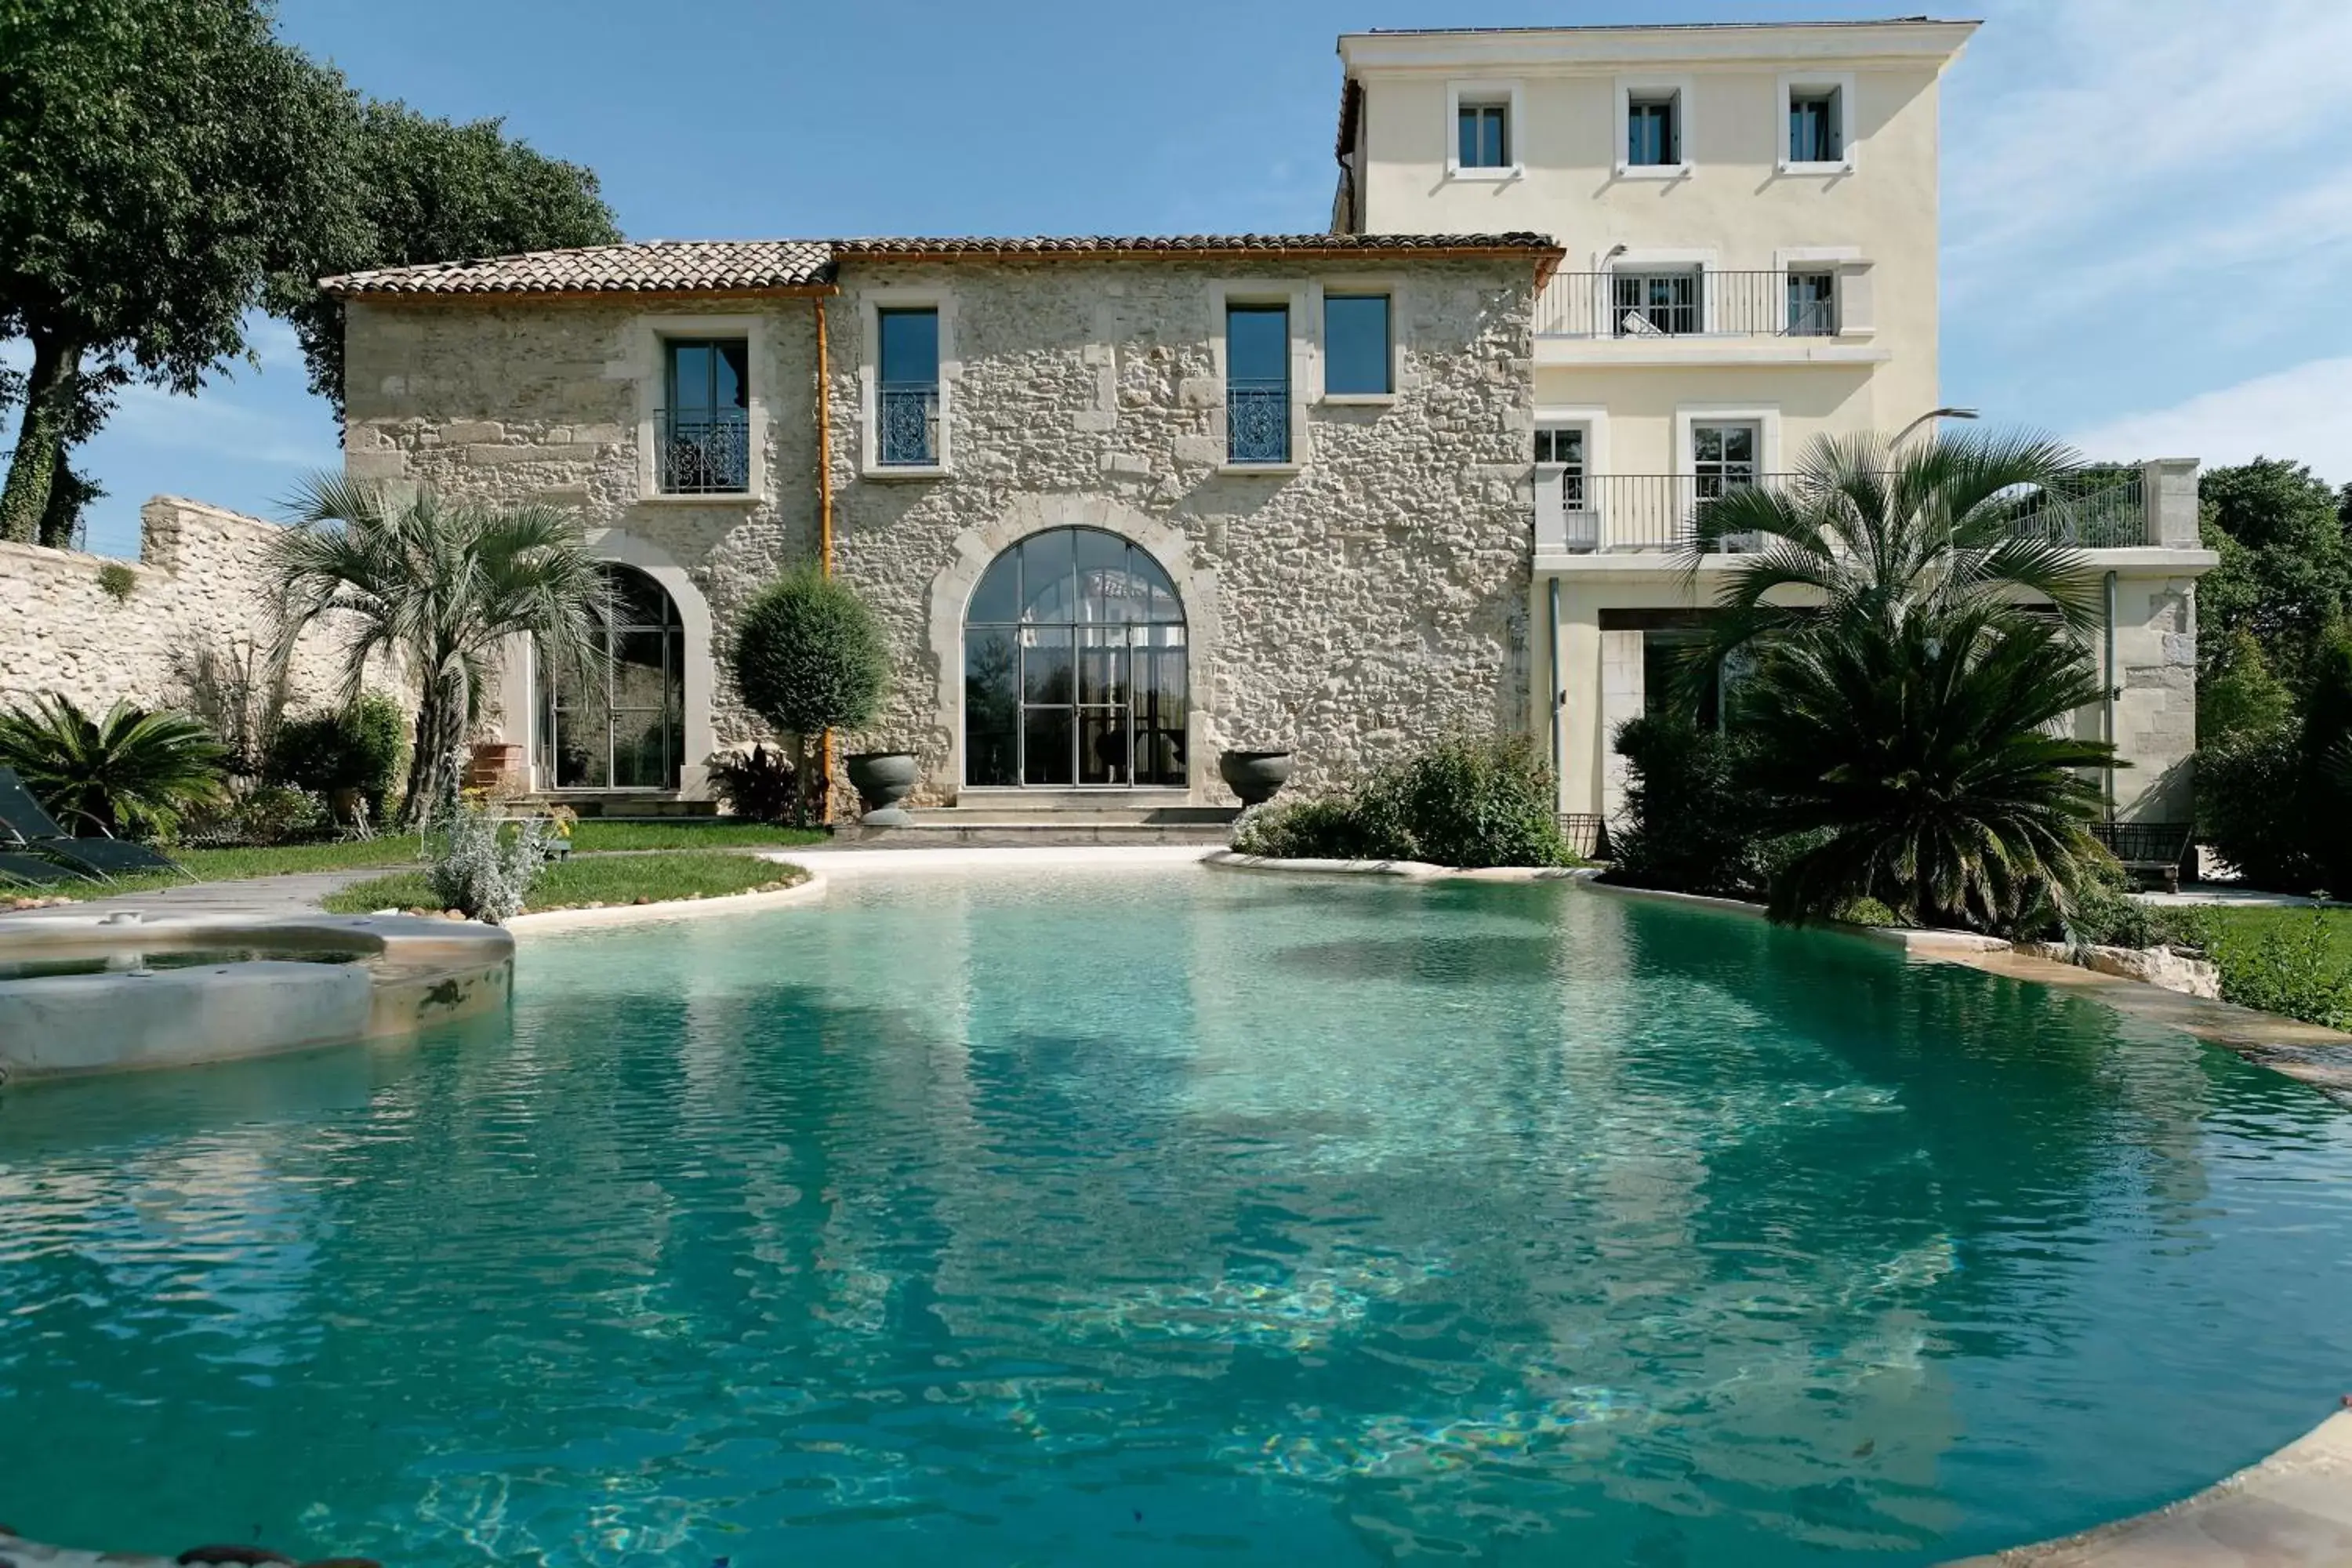 Swimming pool in Domaine de Verchant & Spa - Relais & Châteaux